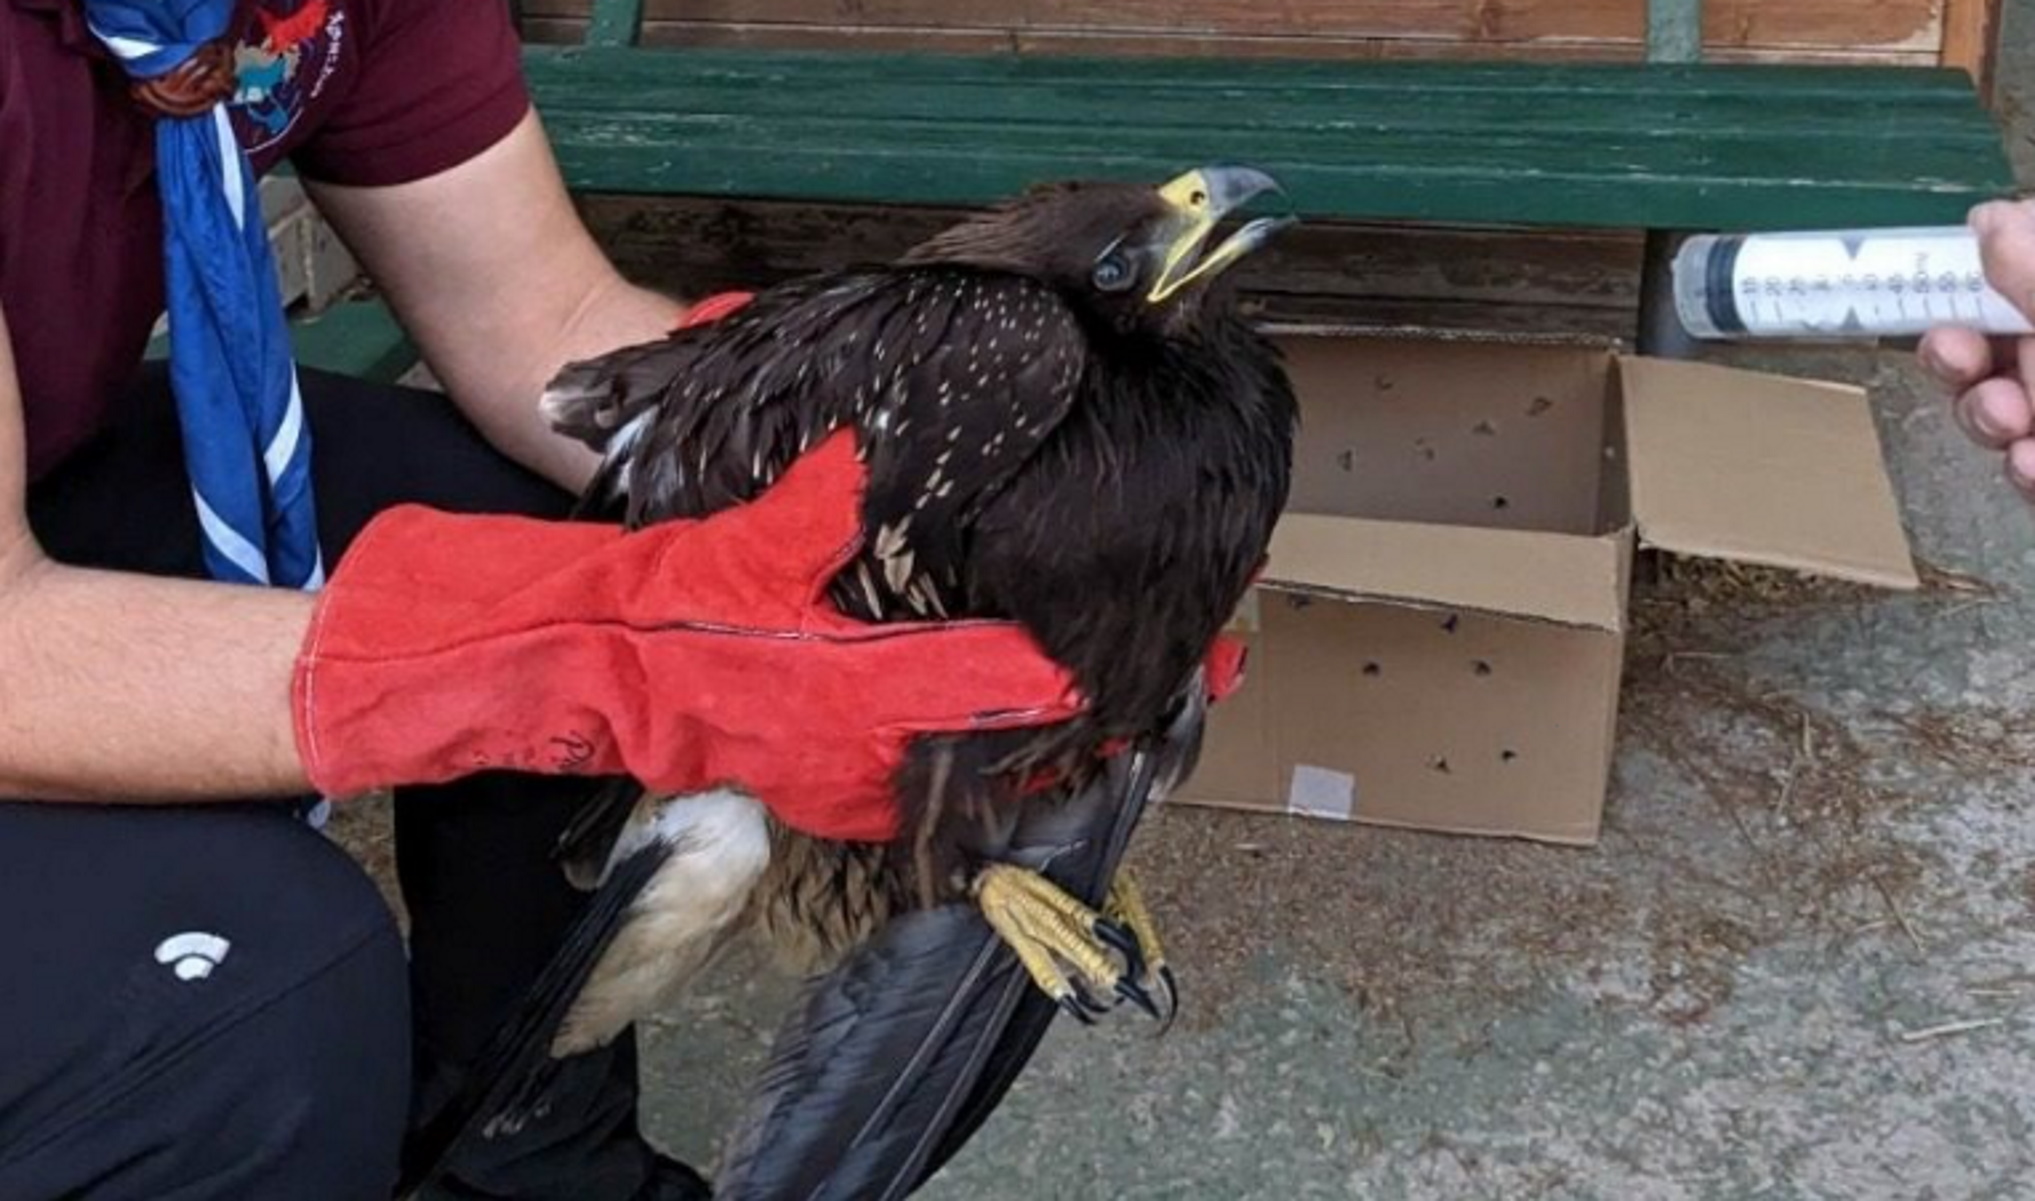 Μυτιλήνη: Πρόσκοποι διέσωσαν σπάνιο αρπακτικό πουλί, έναν  απειλούμενο στικταετό – «Περήφανος ταξιδιώτης των αιθέρων»